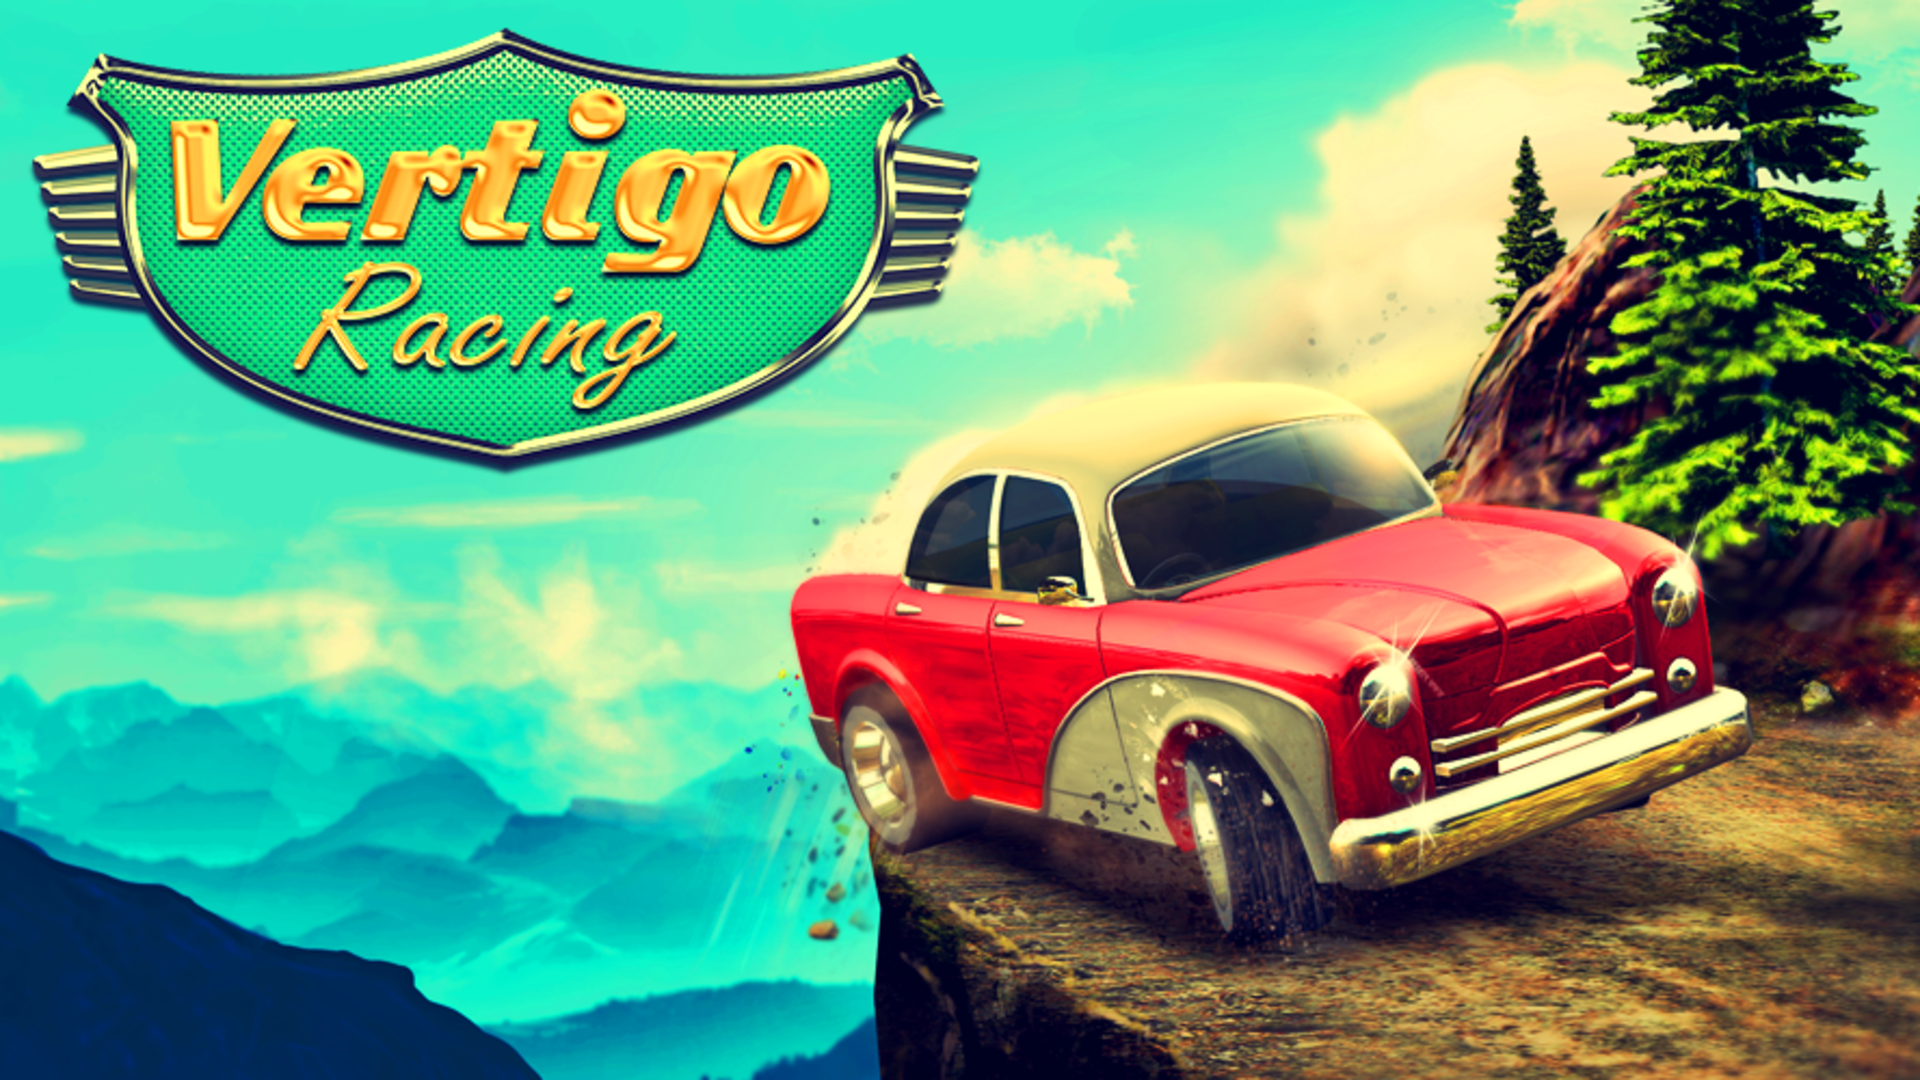 Banner of वर्टिगो रेसिंग 2.1.1